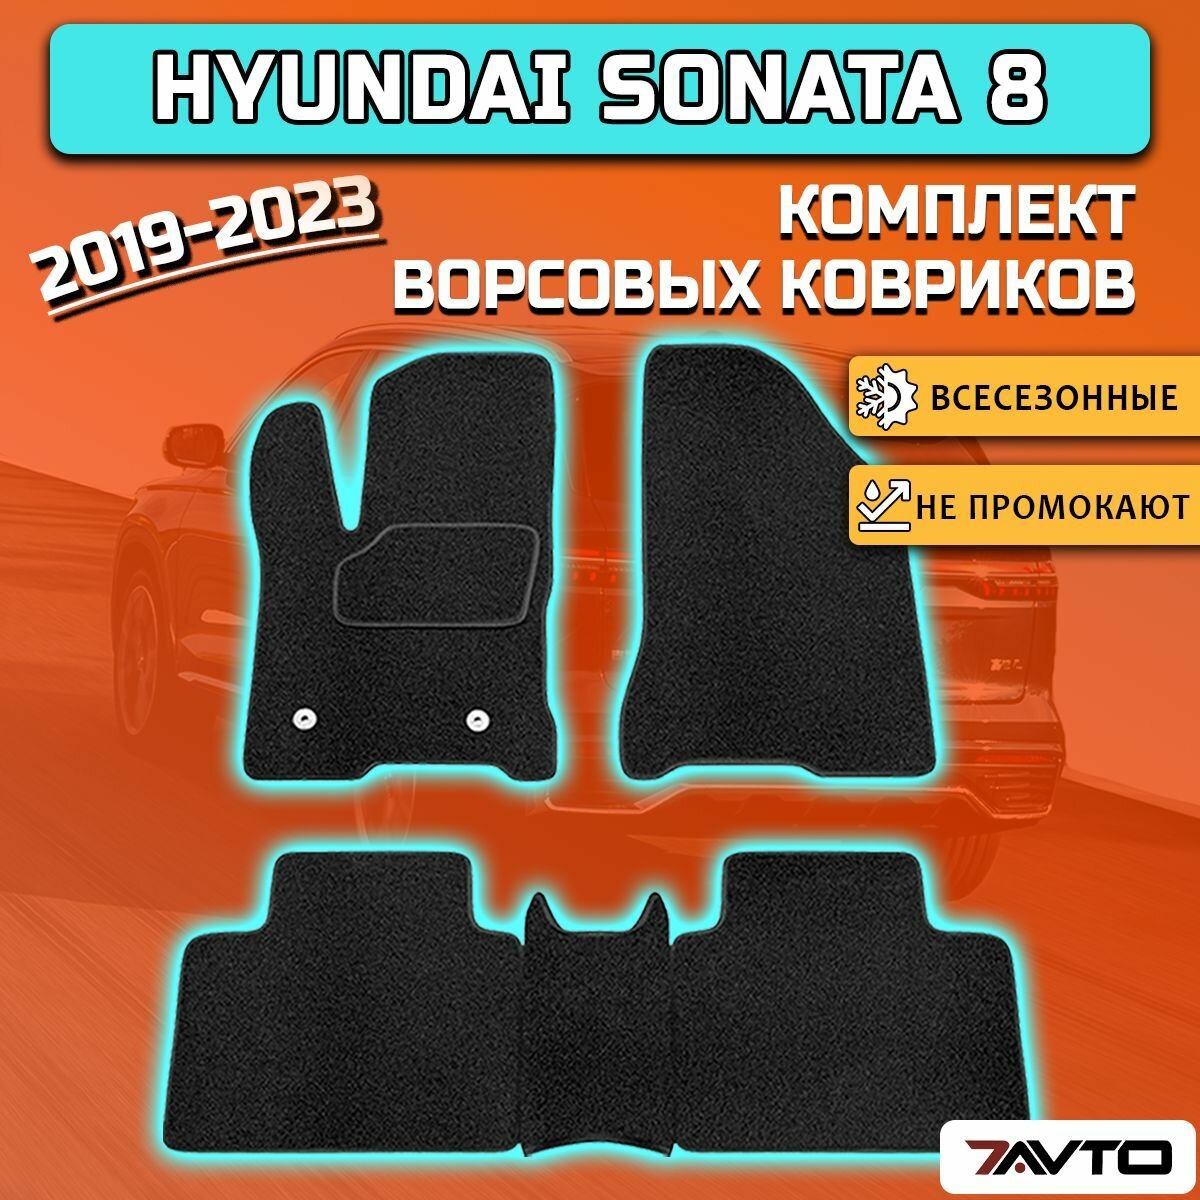 Комплект ворсовых ковриков ECO на Hyundai Sonata VIII 2019-2022 / Хендай Соната 8